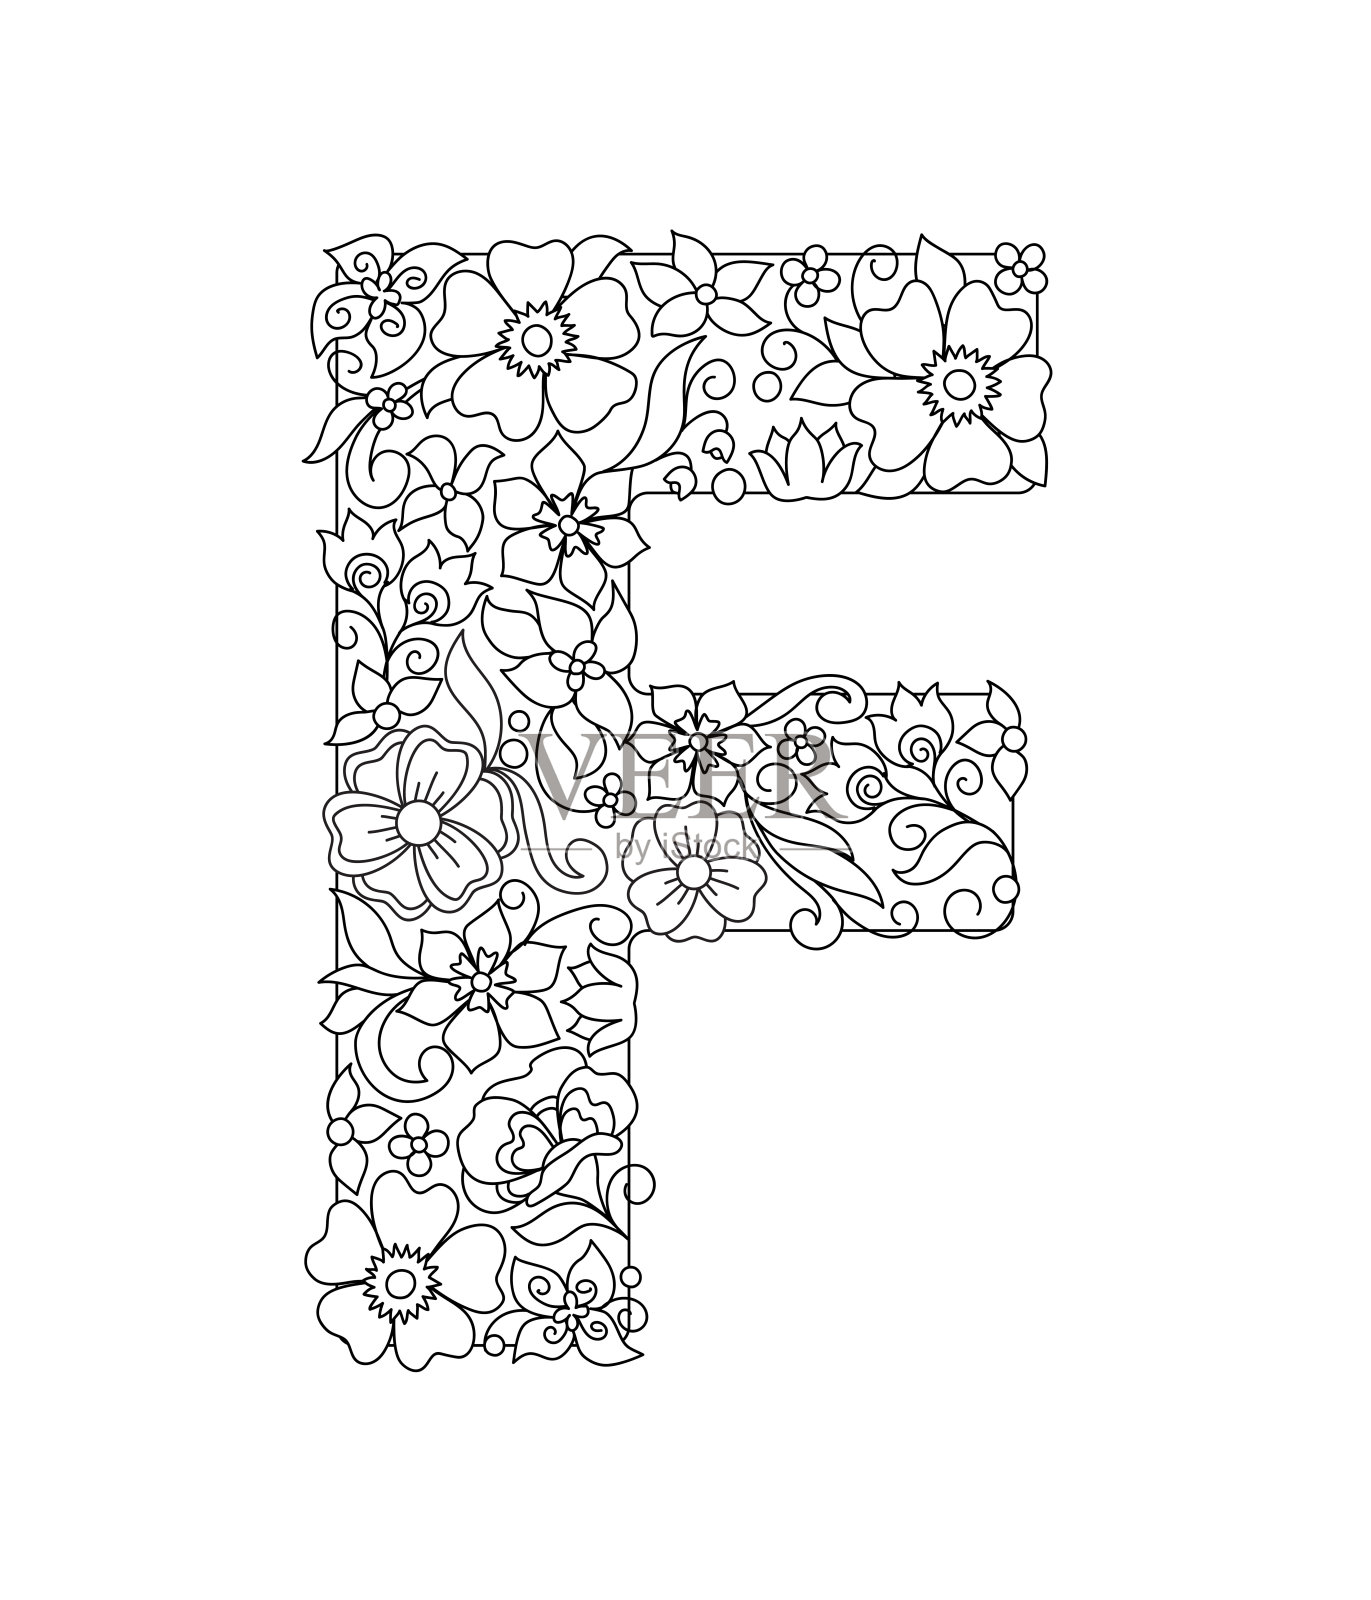 大写字母F与抽象的花图案设计元素图片